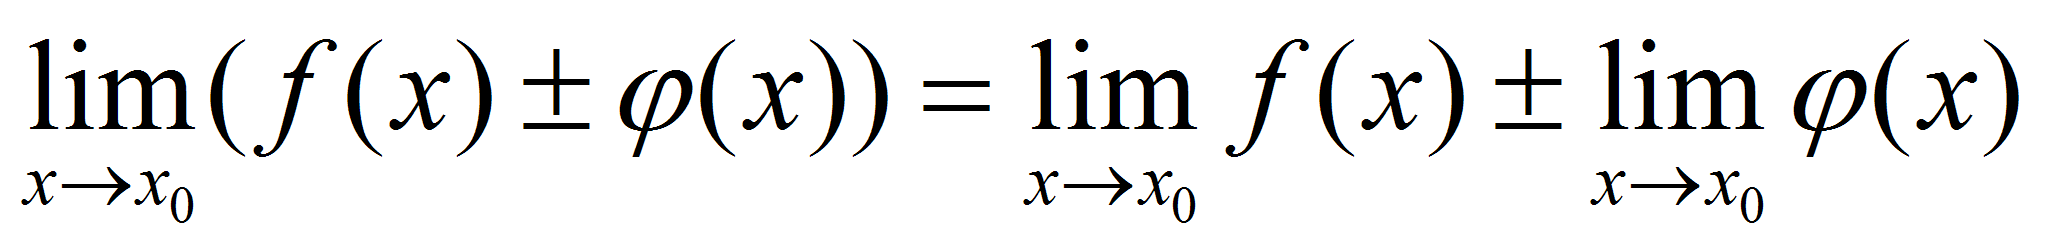 Lim f x 3. Lim f(x). Lim f x g x. Предел композиции функций. Предел произведения равен произведению пределов.